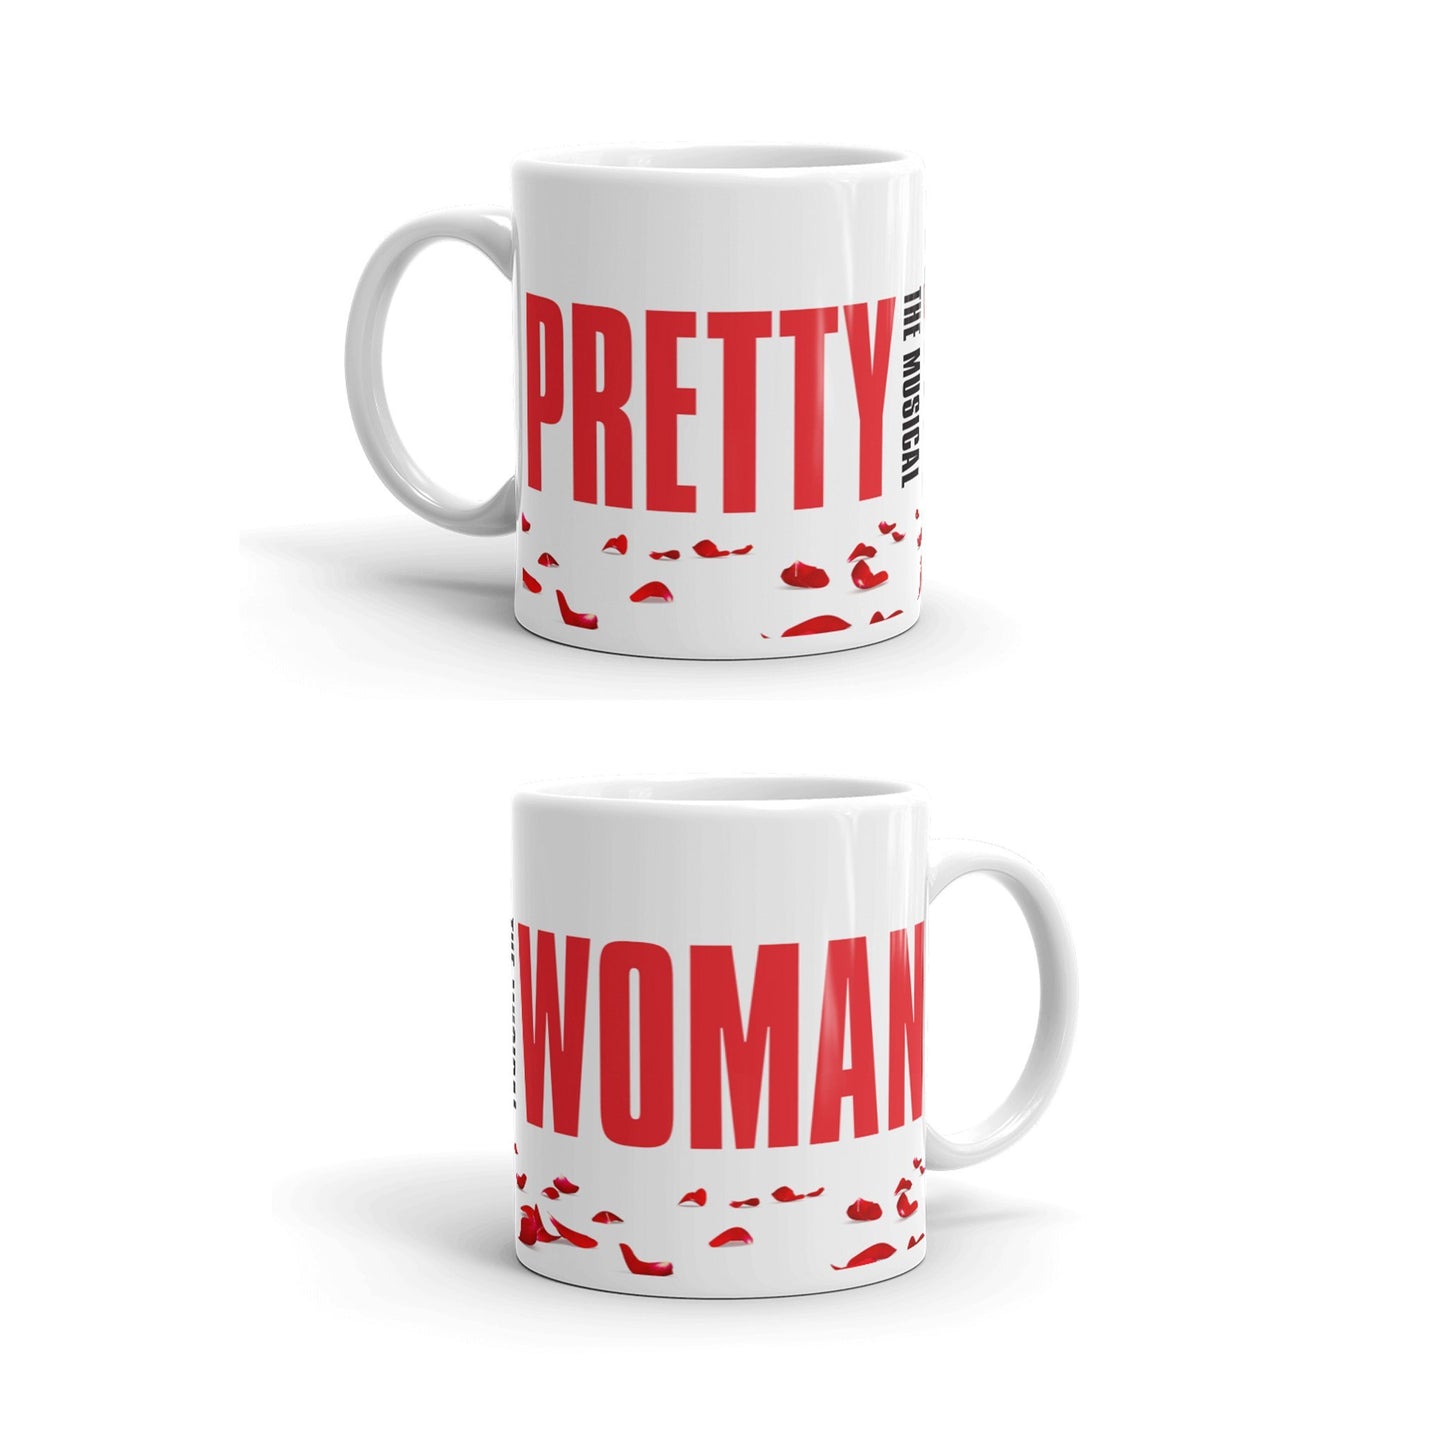 PRETTY WOMAN - Mug